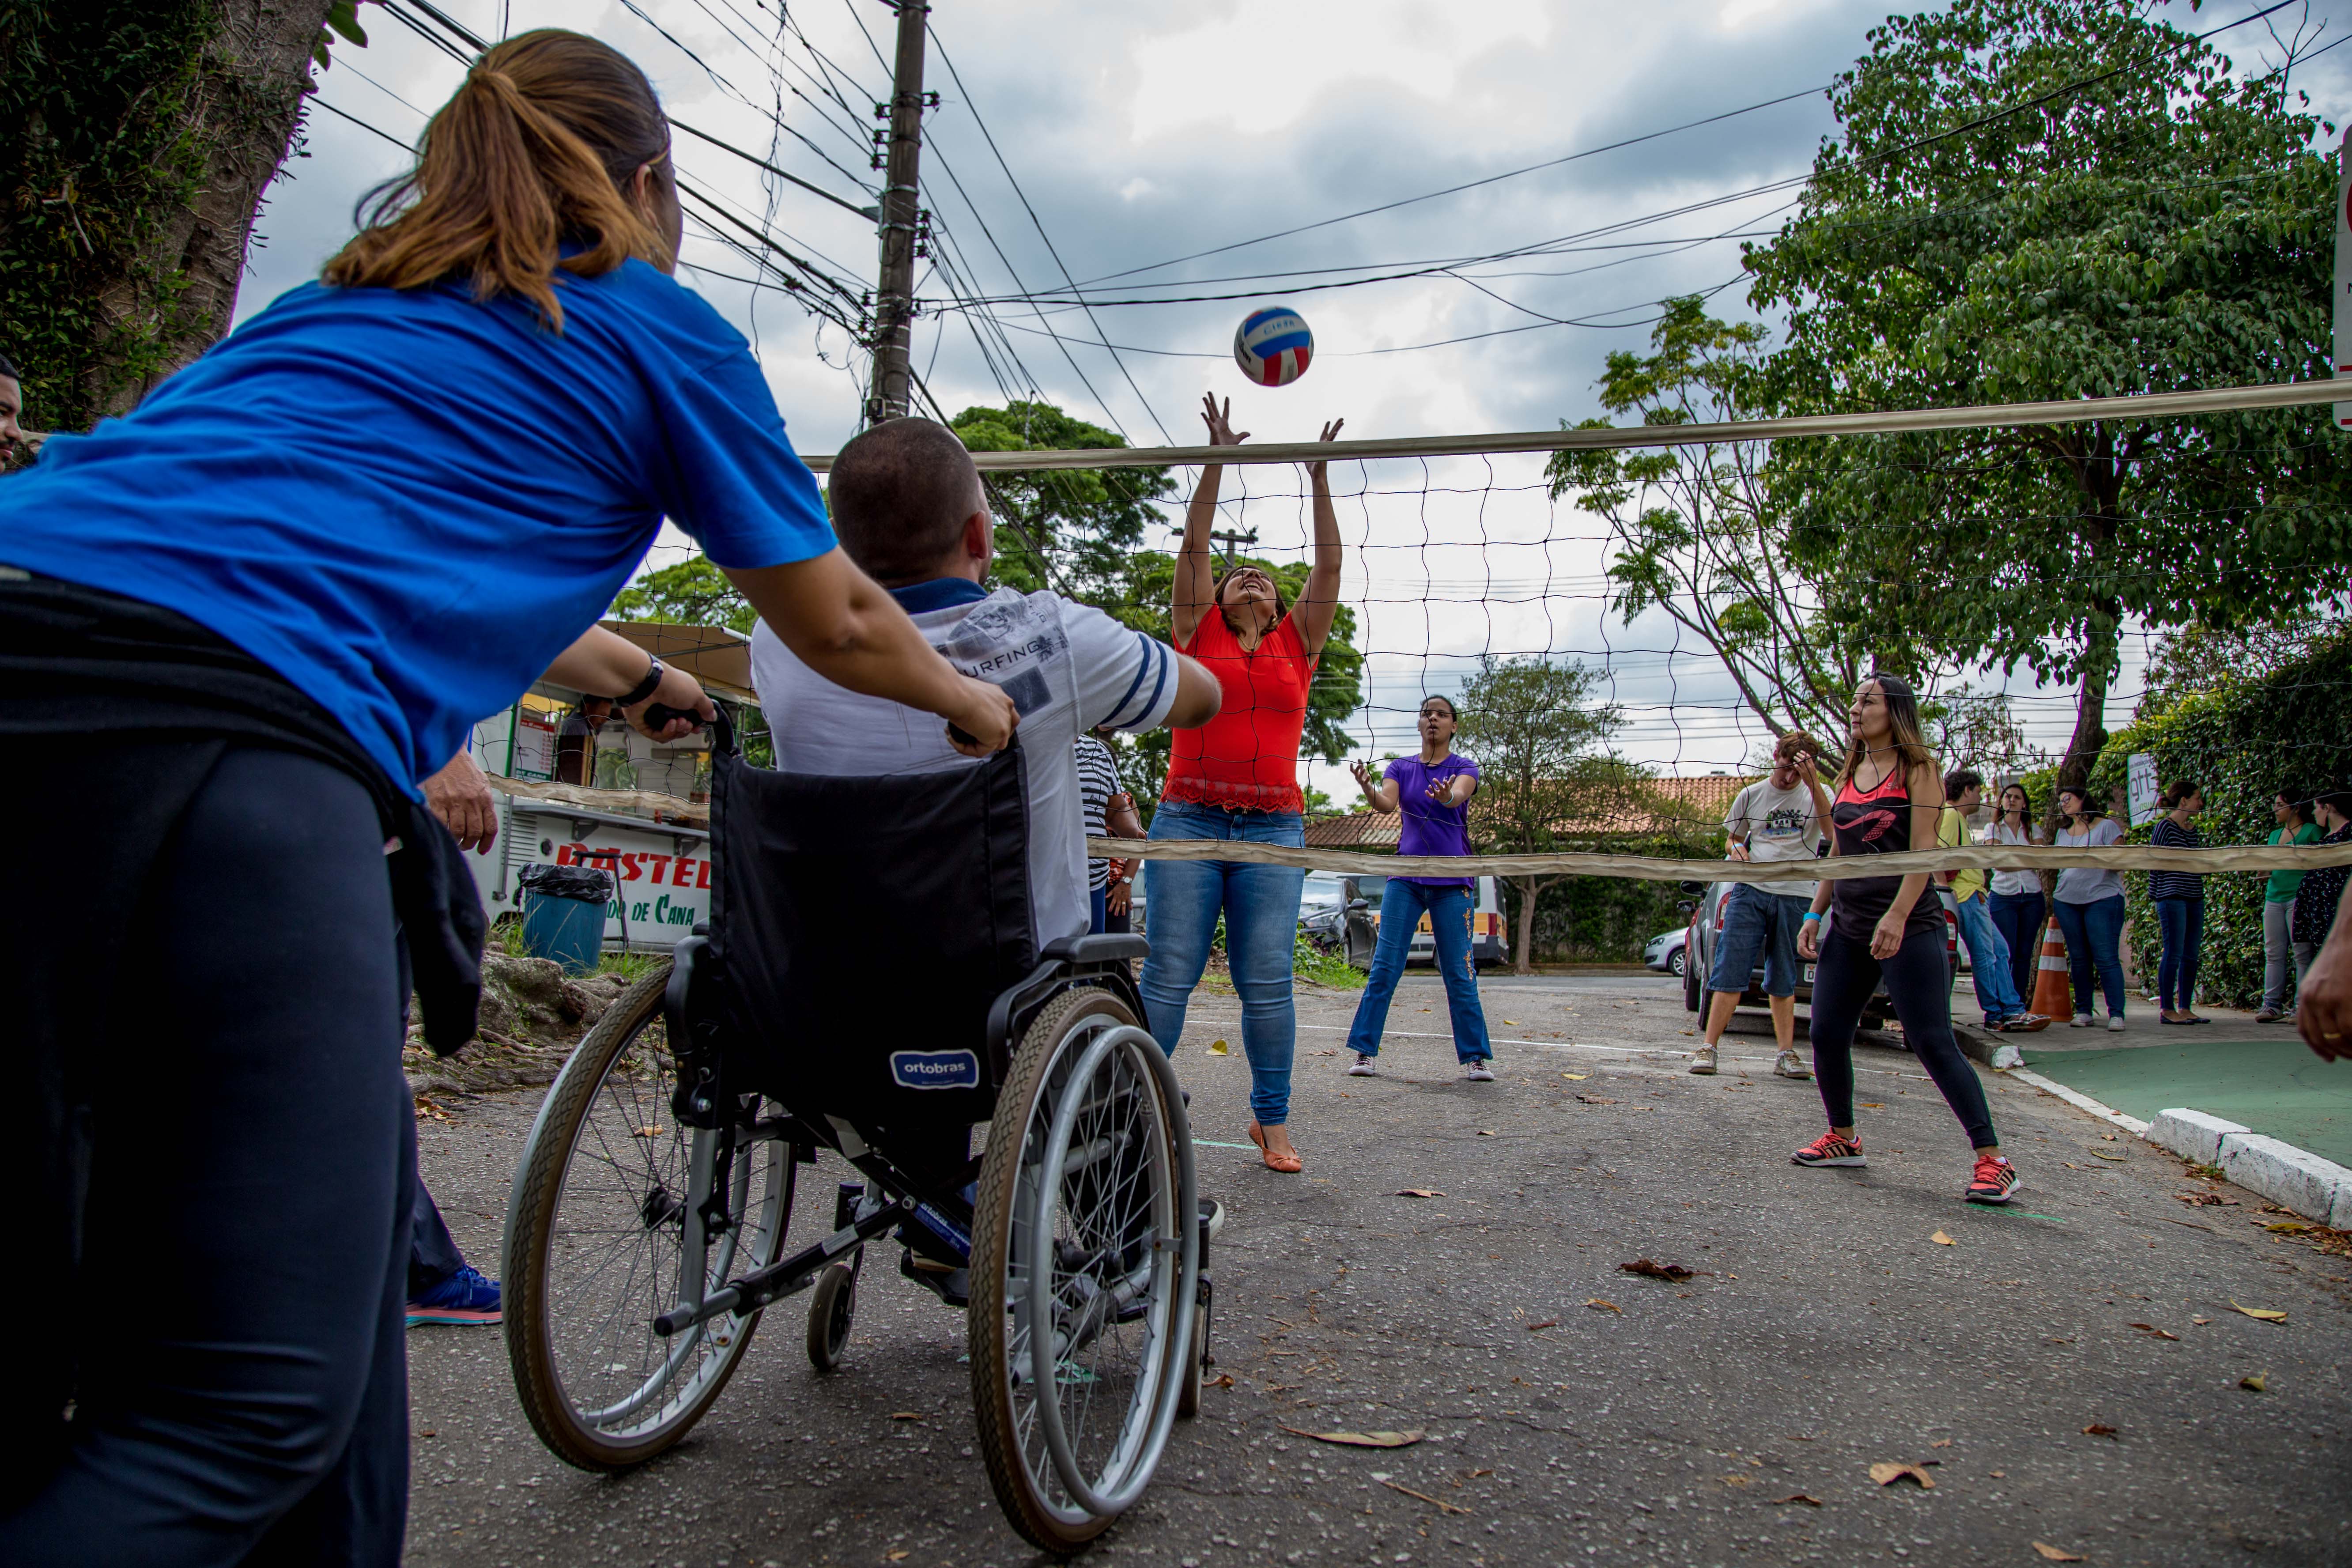 De costas para a imagem, professora empurra cadeira de rodas de aluno com deficiência física que espera recebimento de bola arremessada por outra estudante do lado oposto da rede pendurada na rua.